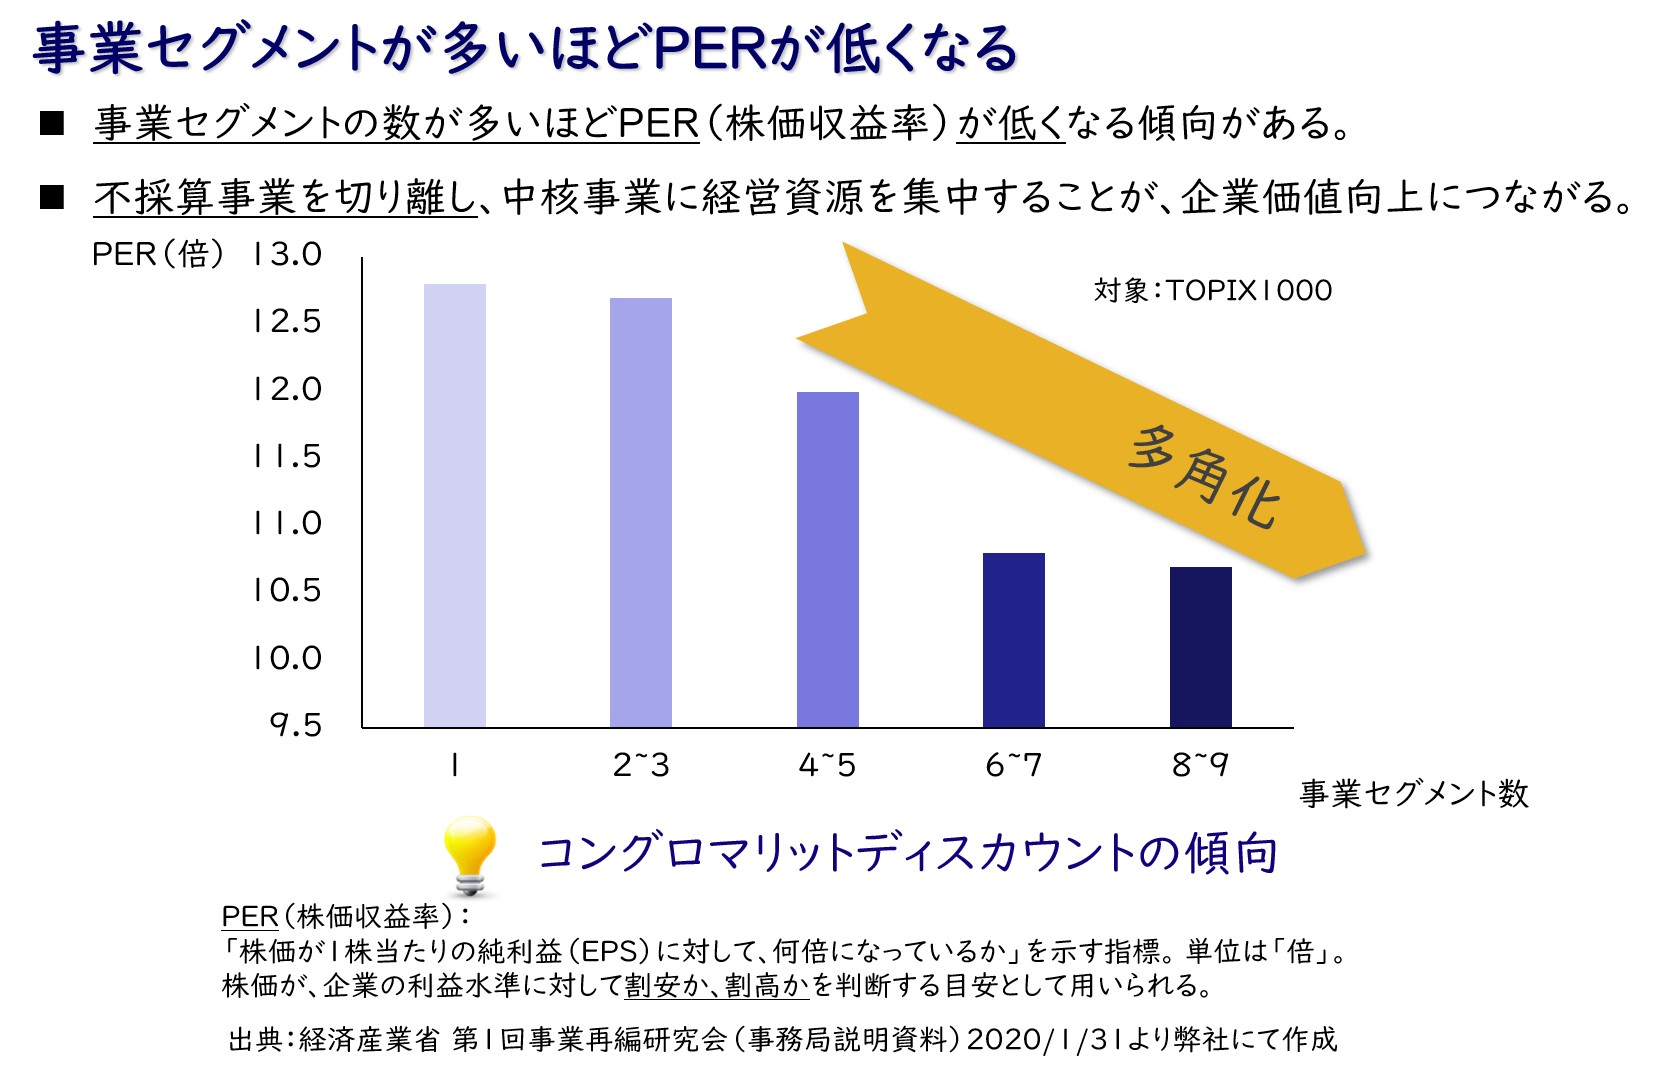 【図8】PER（株価収益率）と事業セグメント数の関係